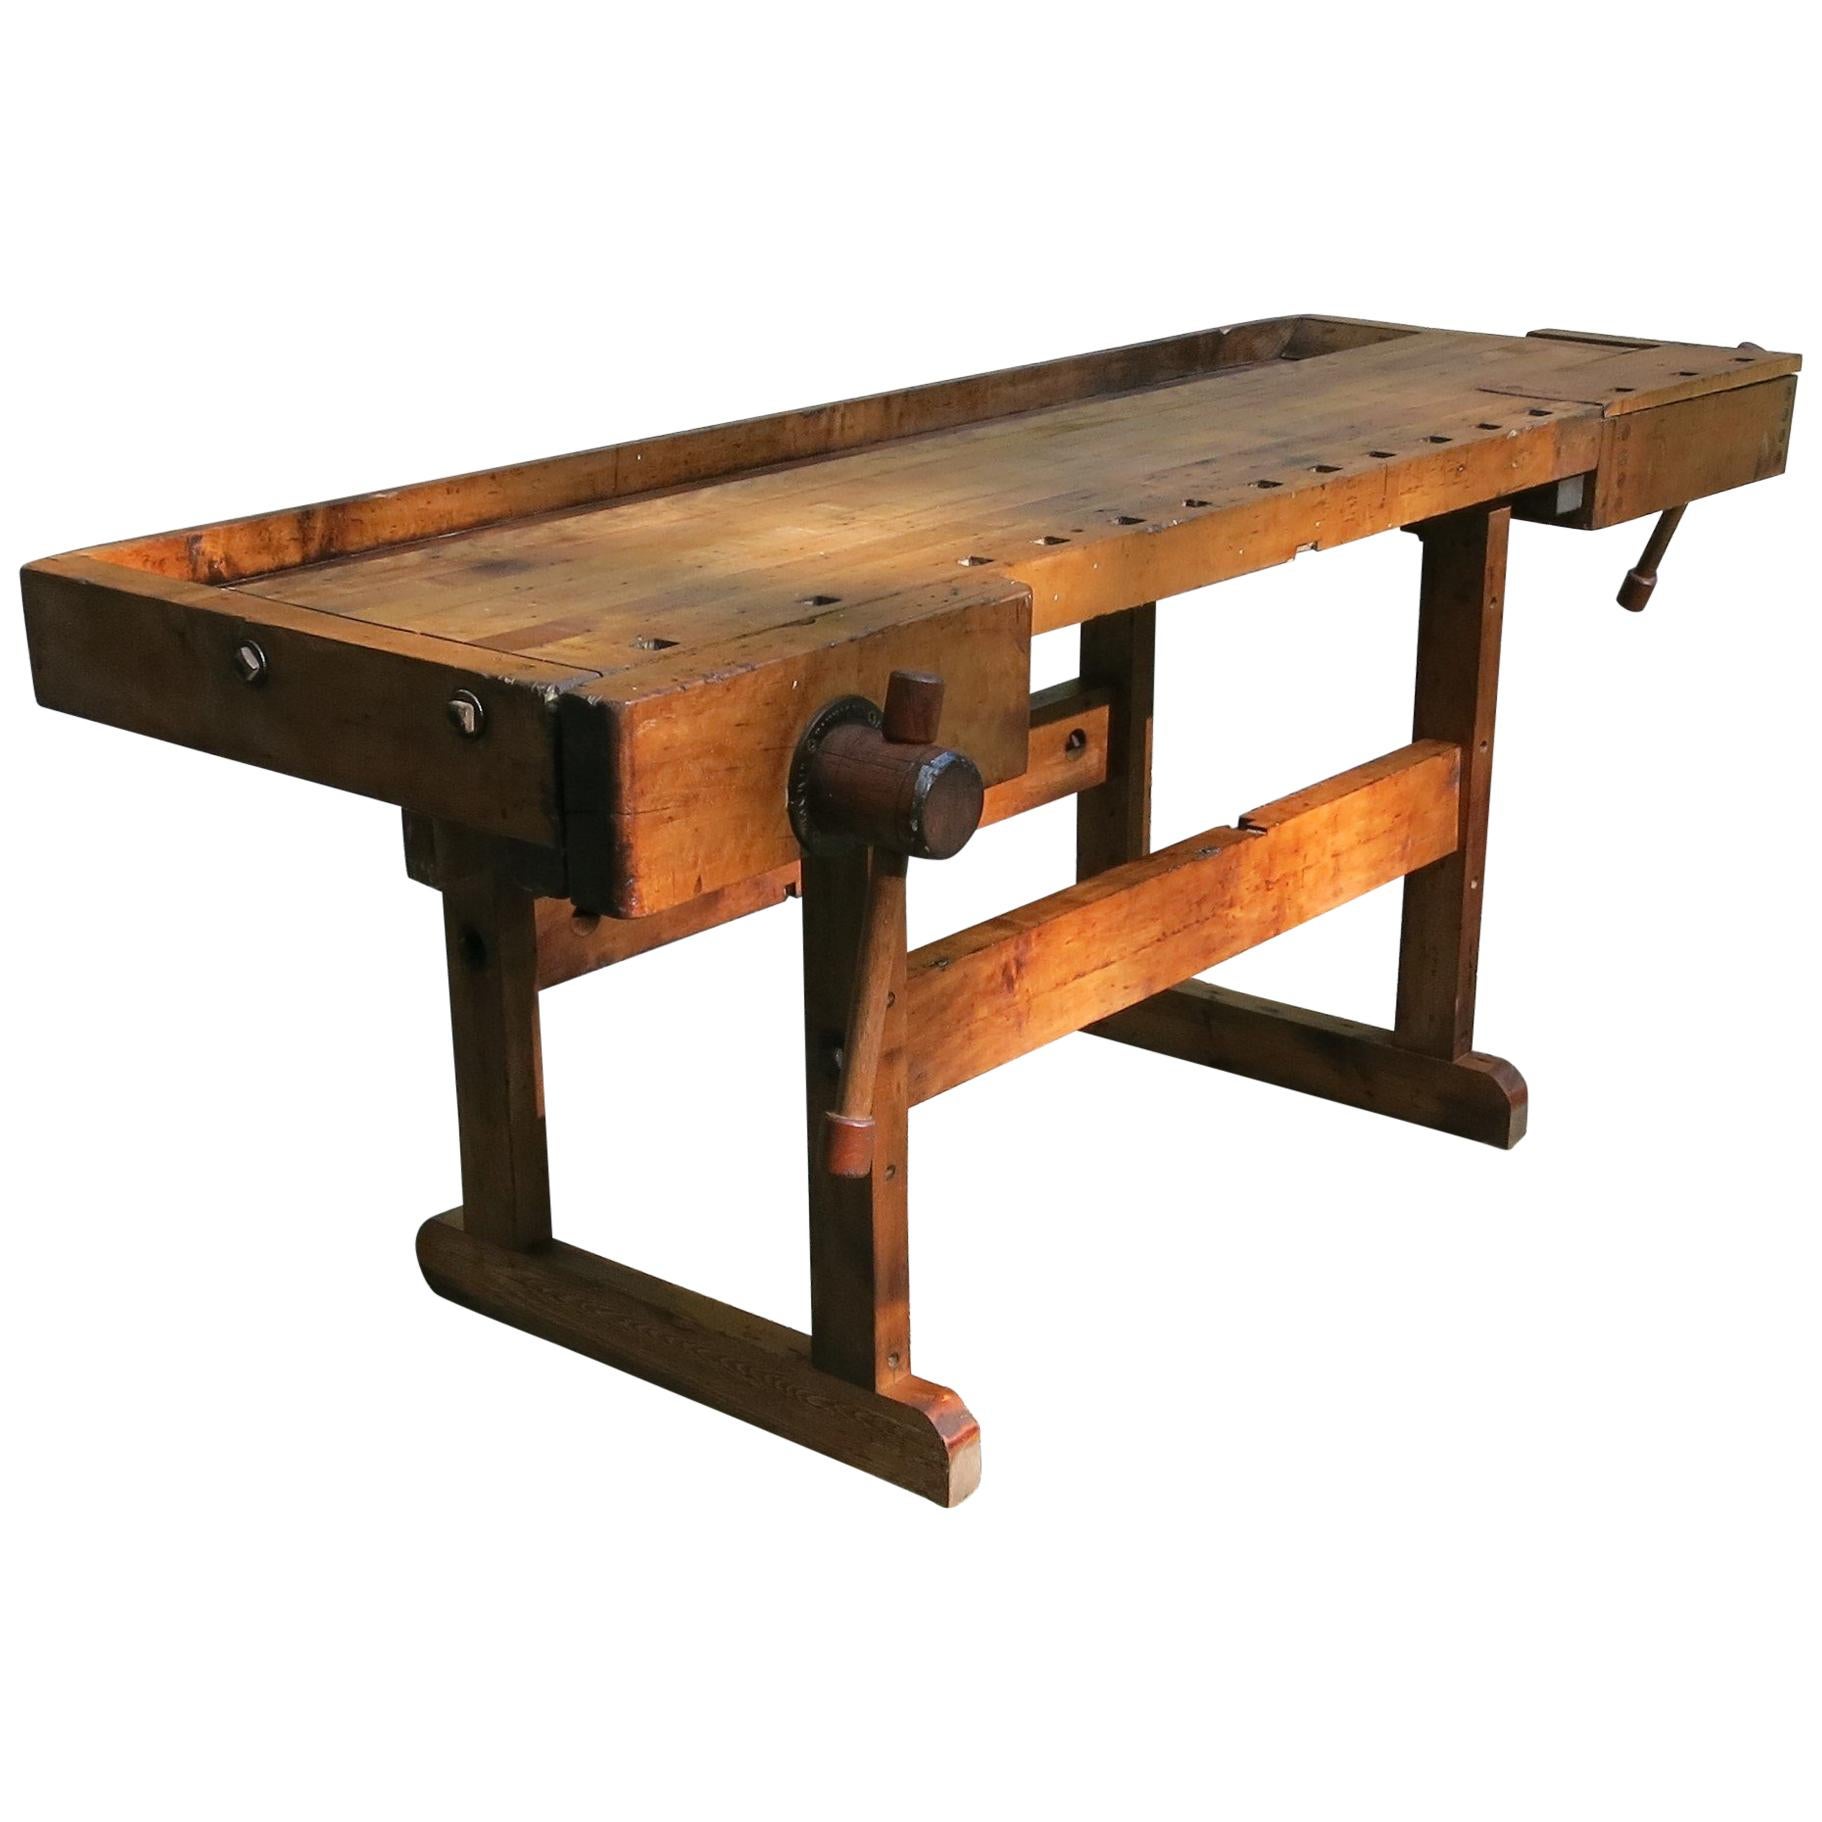 Antique Workbench Industrial Table Hammacher Schlemmer, circa 1900